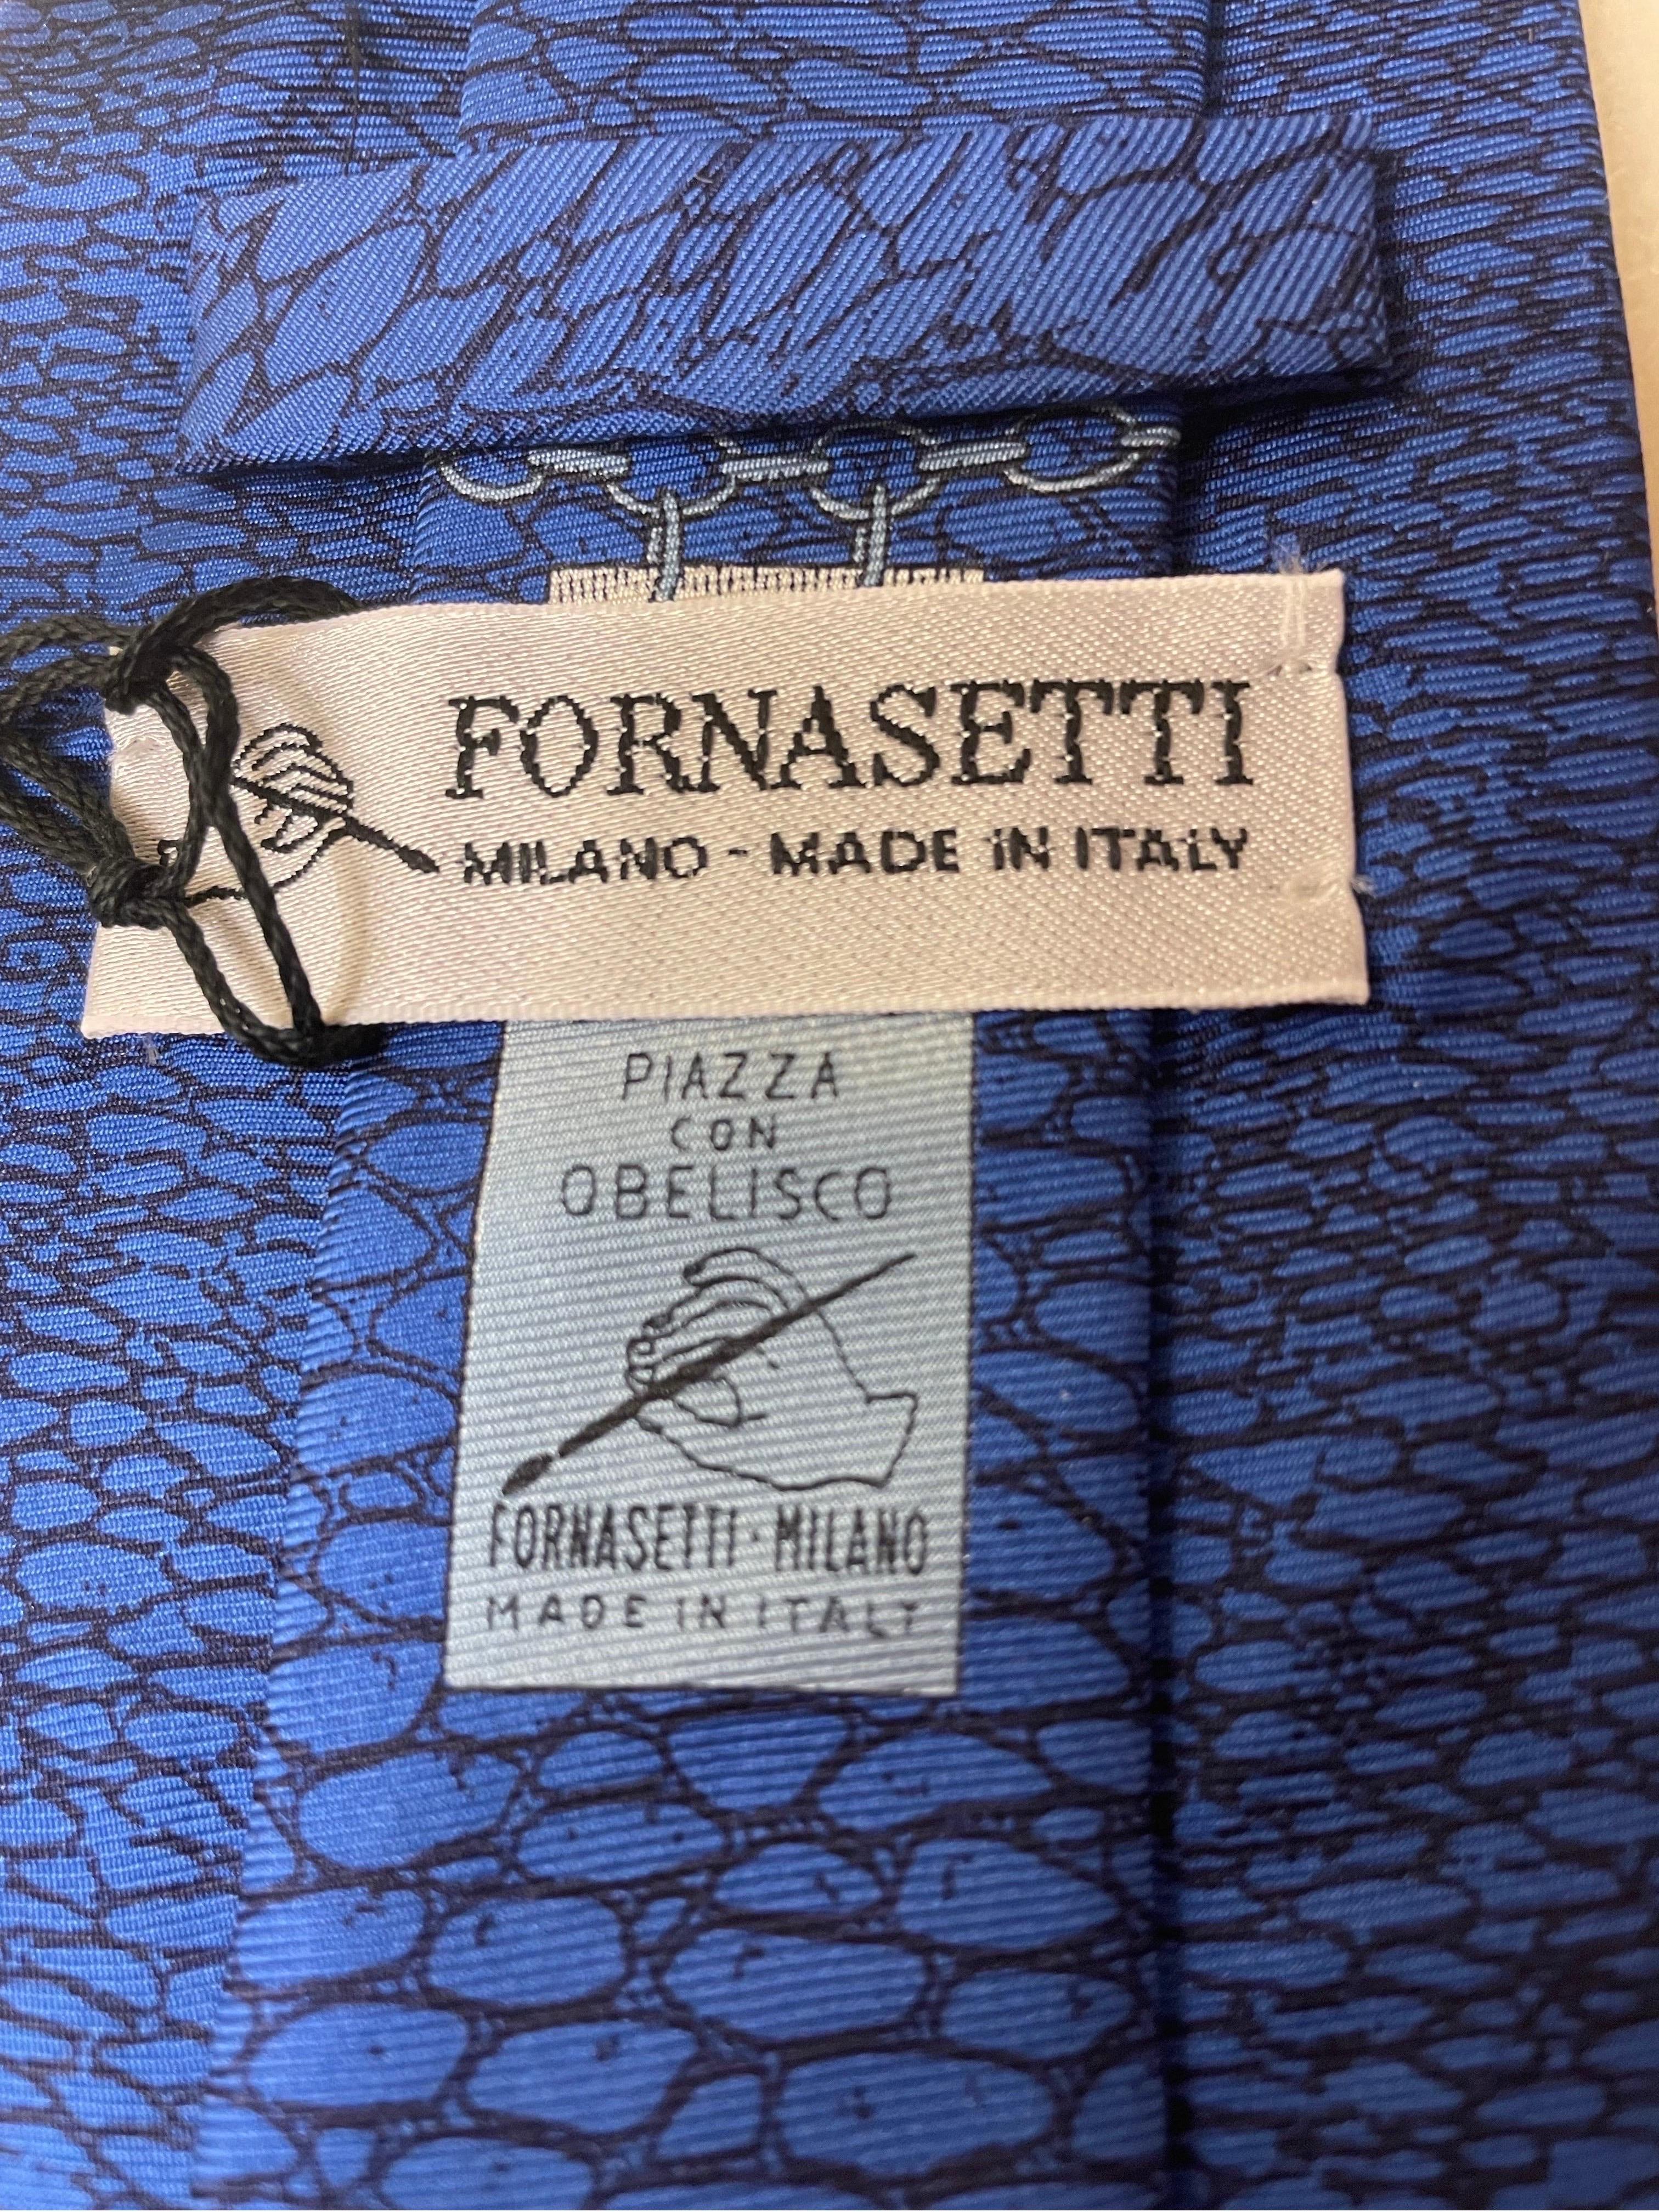 Unique Piero Fornasetti Silk Tie Cravatta . Piazza Con Obelisco . Milano Made In Italy .